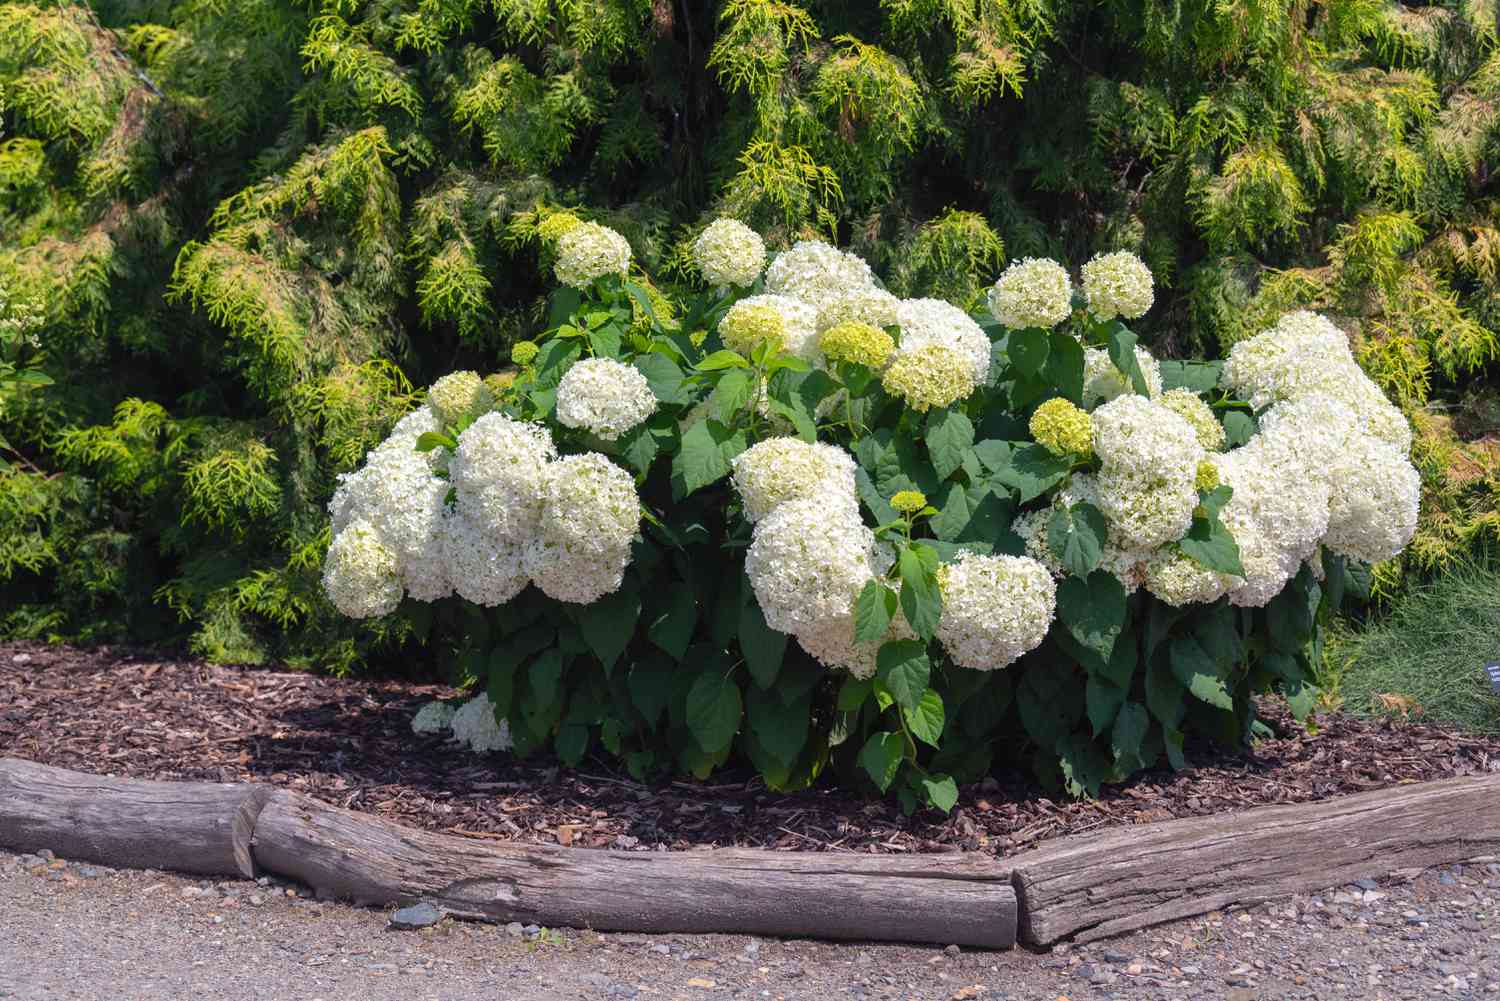 Vista frontal del arbusto de hortensias Annabelle